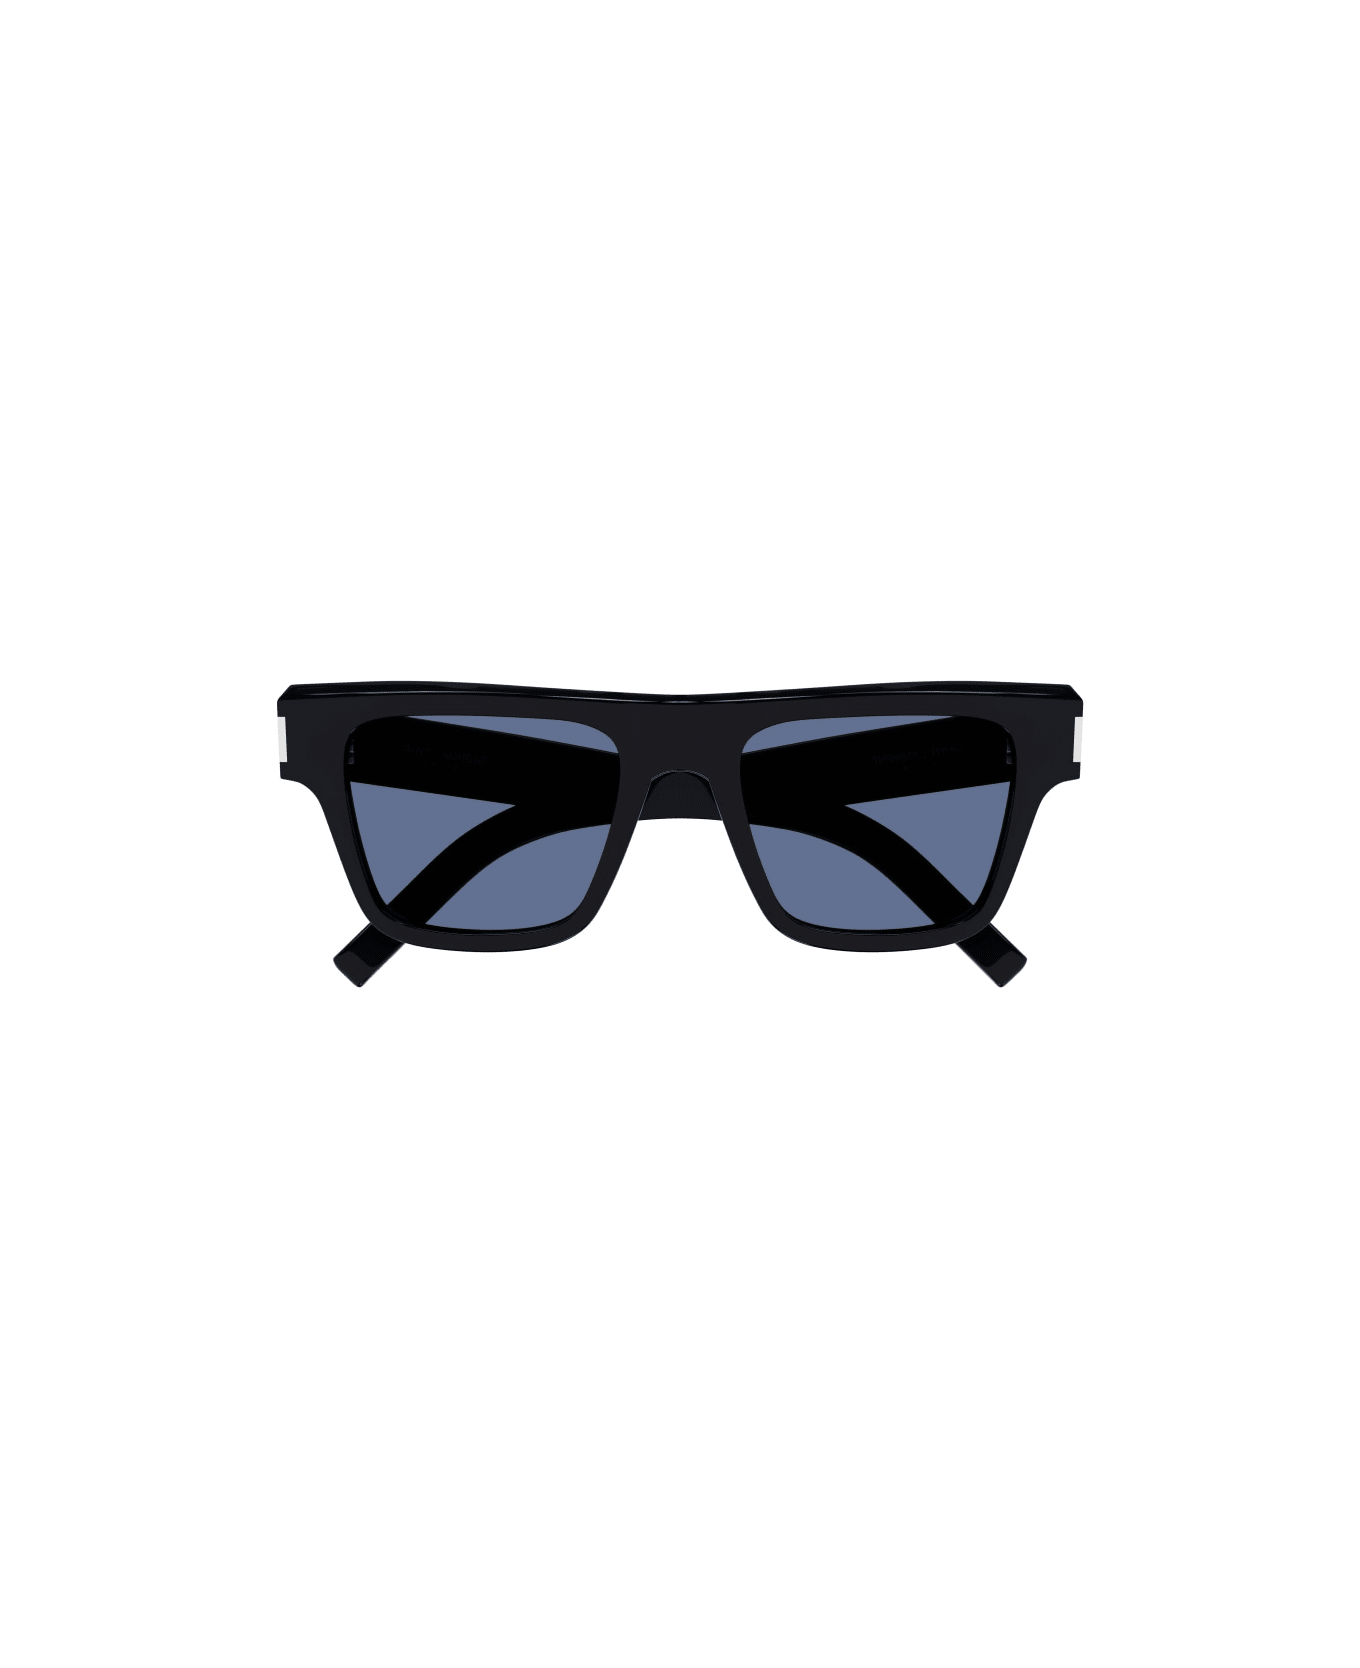 Saint Laurent Eyewear SL 469 Sunglasses - Black Black Blue